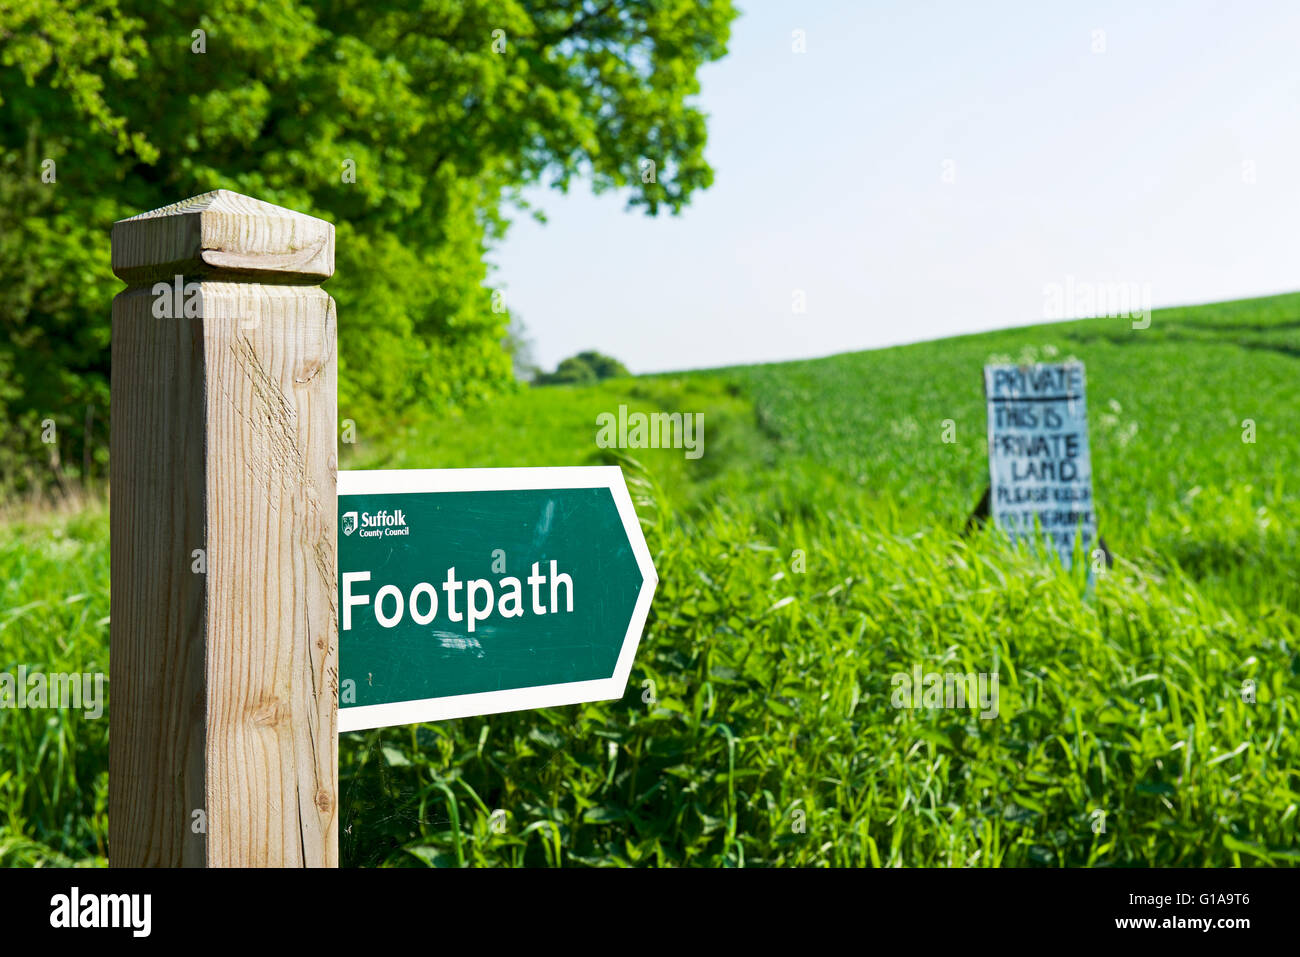 Sentier fingerpost pointant à signer en disant cela sur le terrain est un terrain privé, England UK Banque D'Images